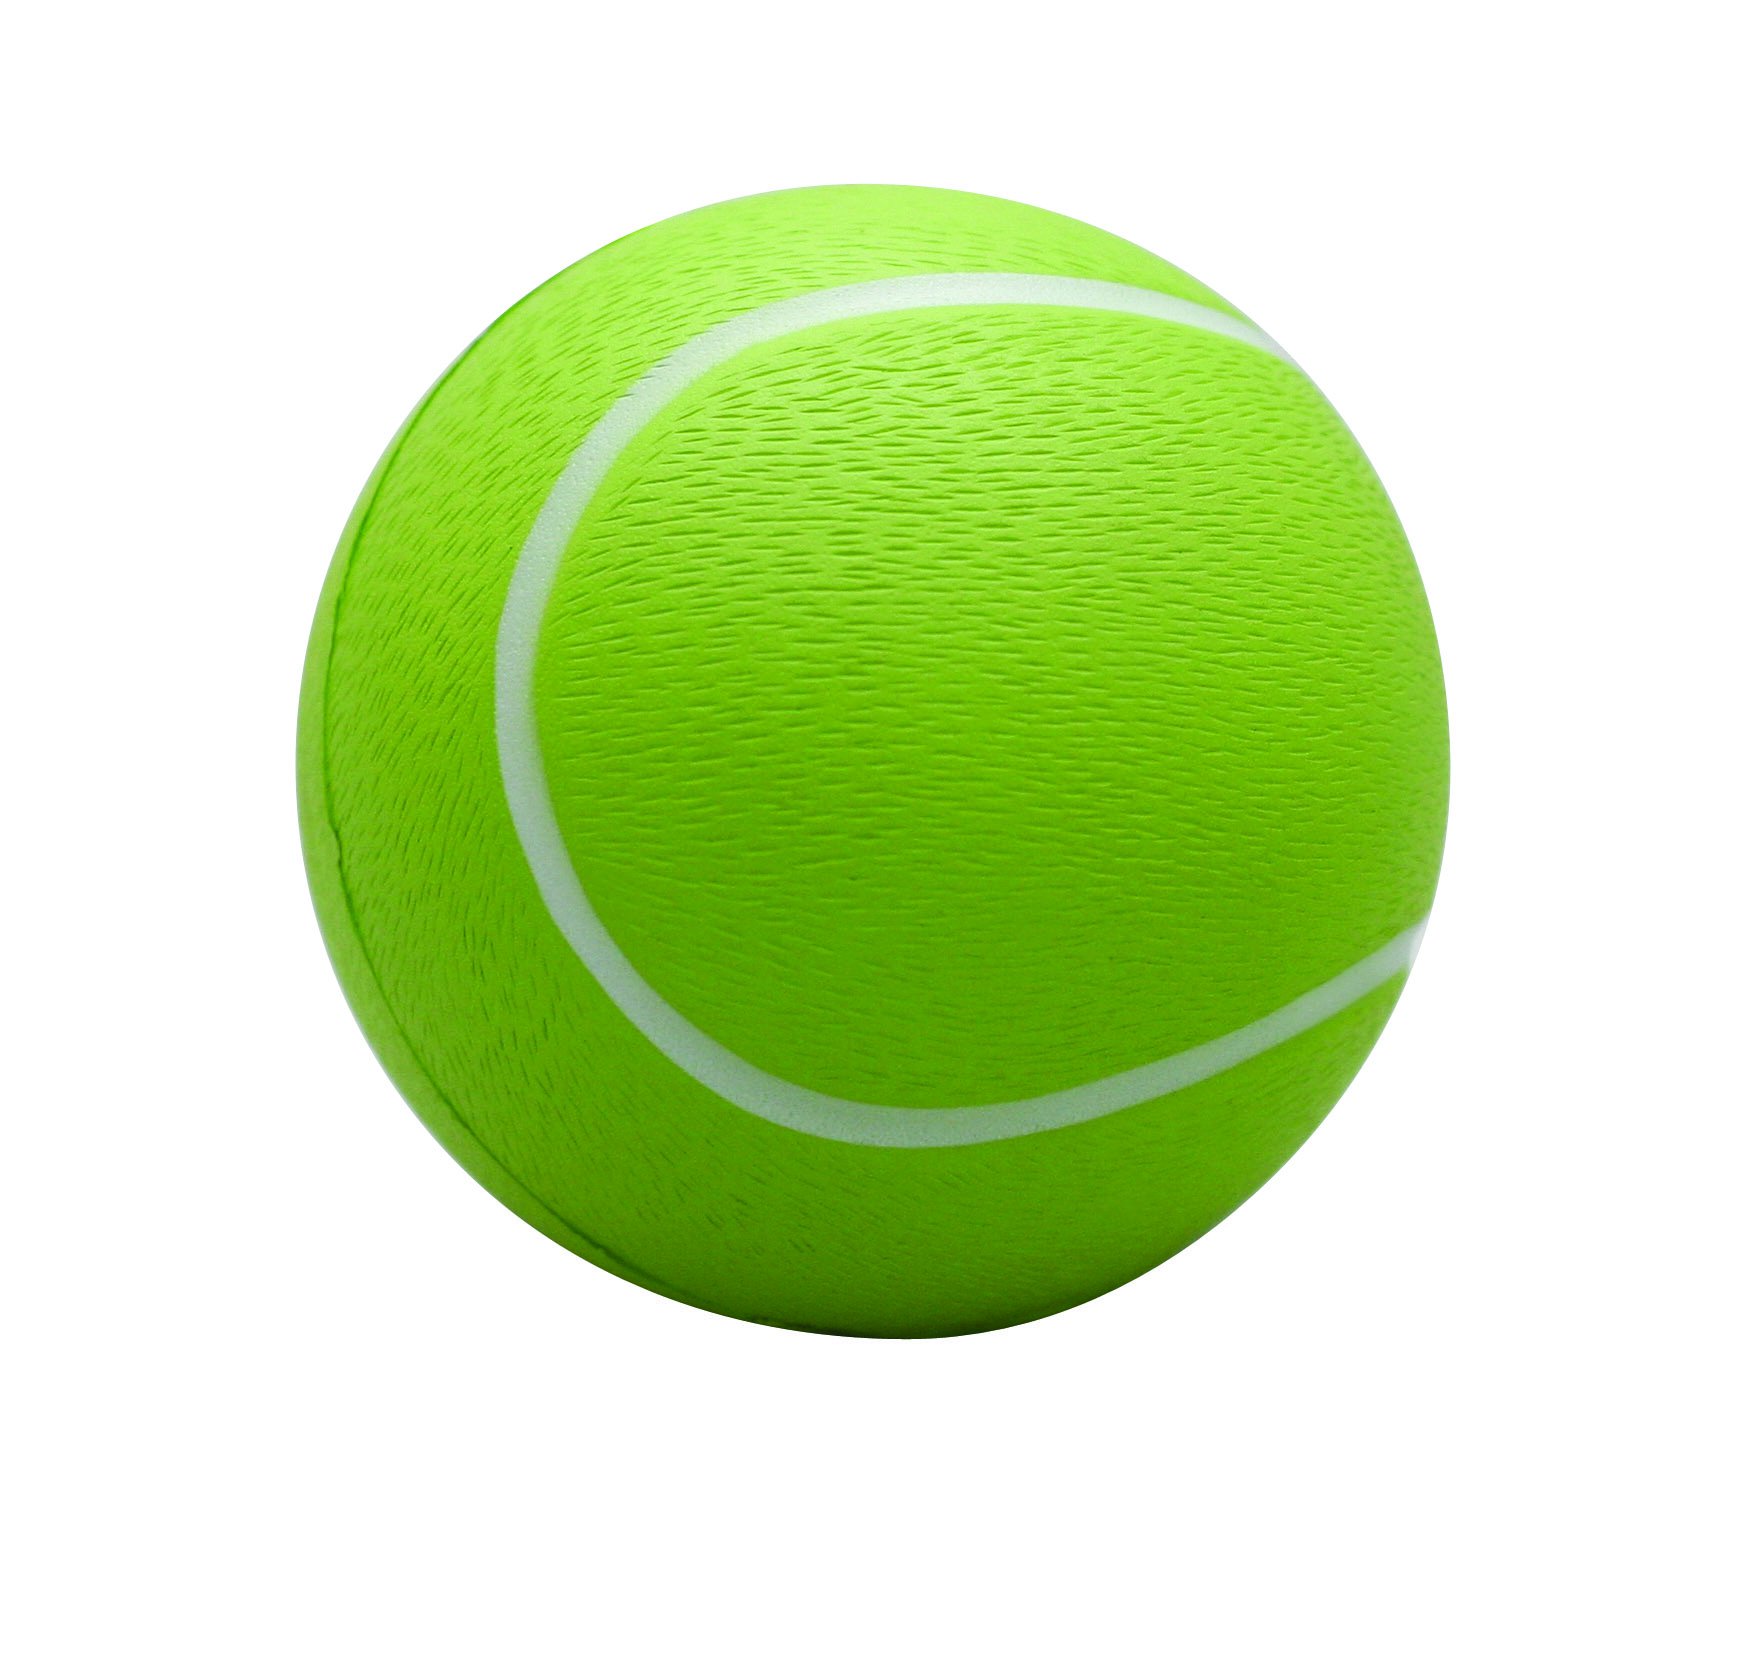 Cartoon Tennis Ball - ClipArt Best